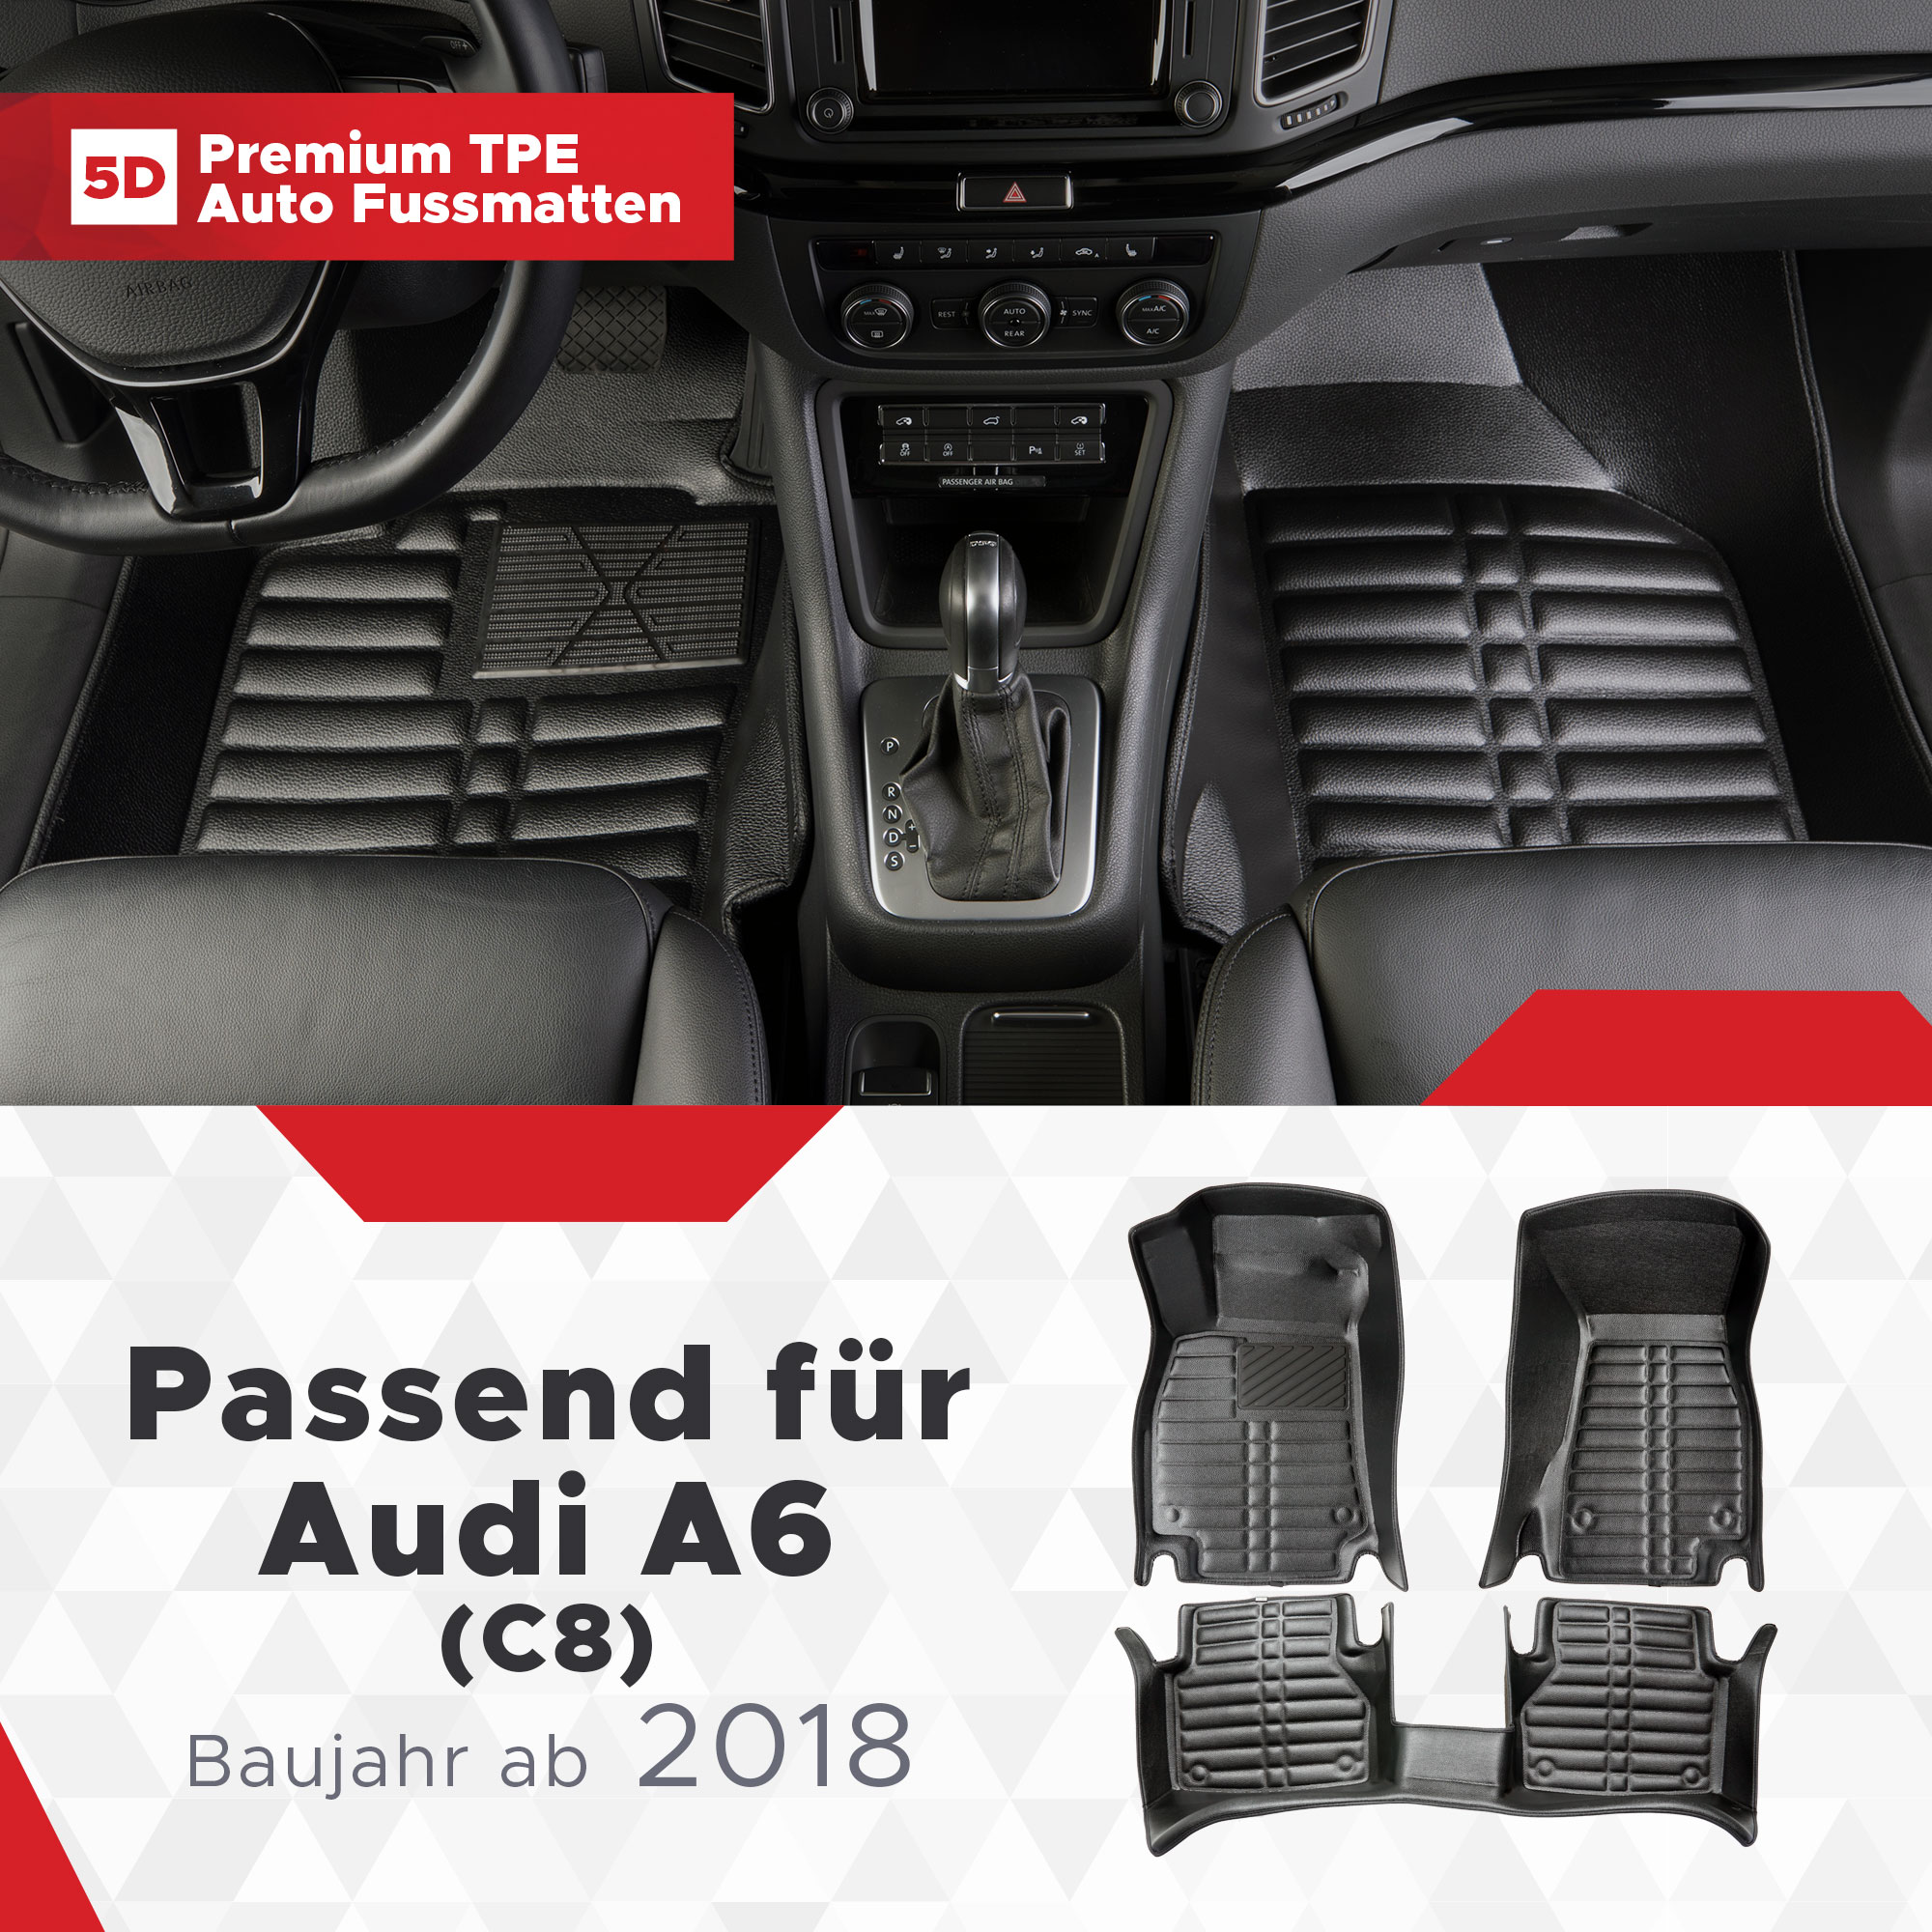 5D Audi A6 (C8) Fussmatten Bj ab 2018 TPE